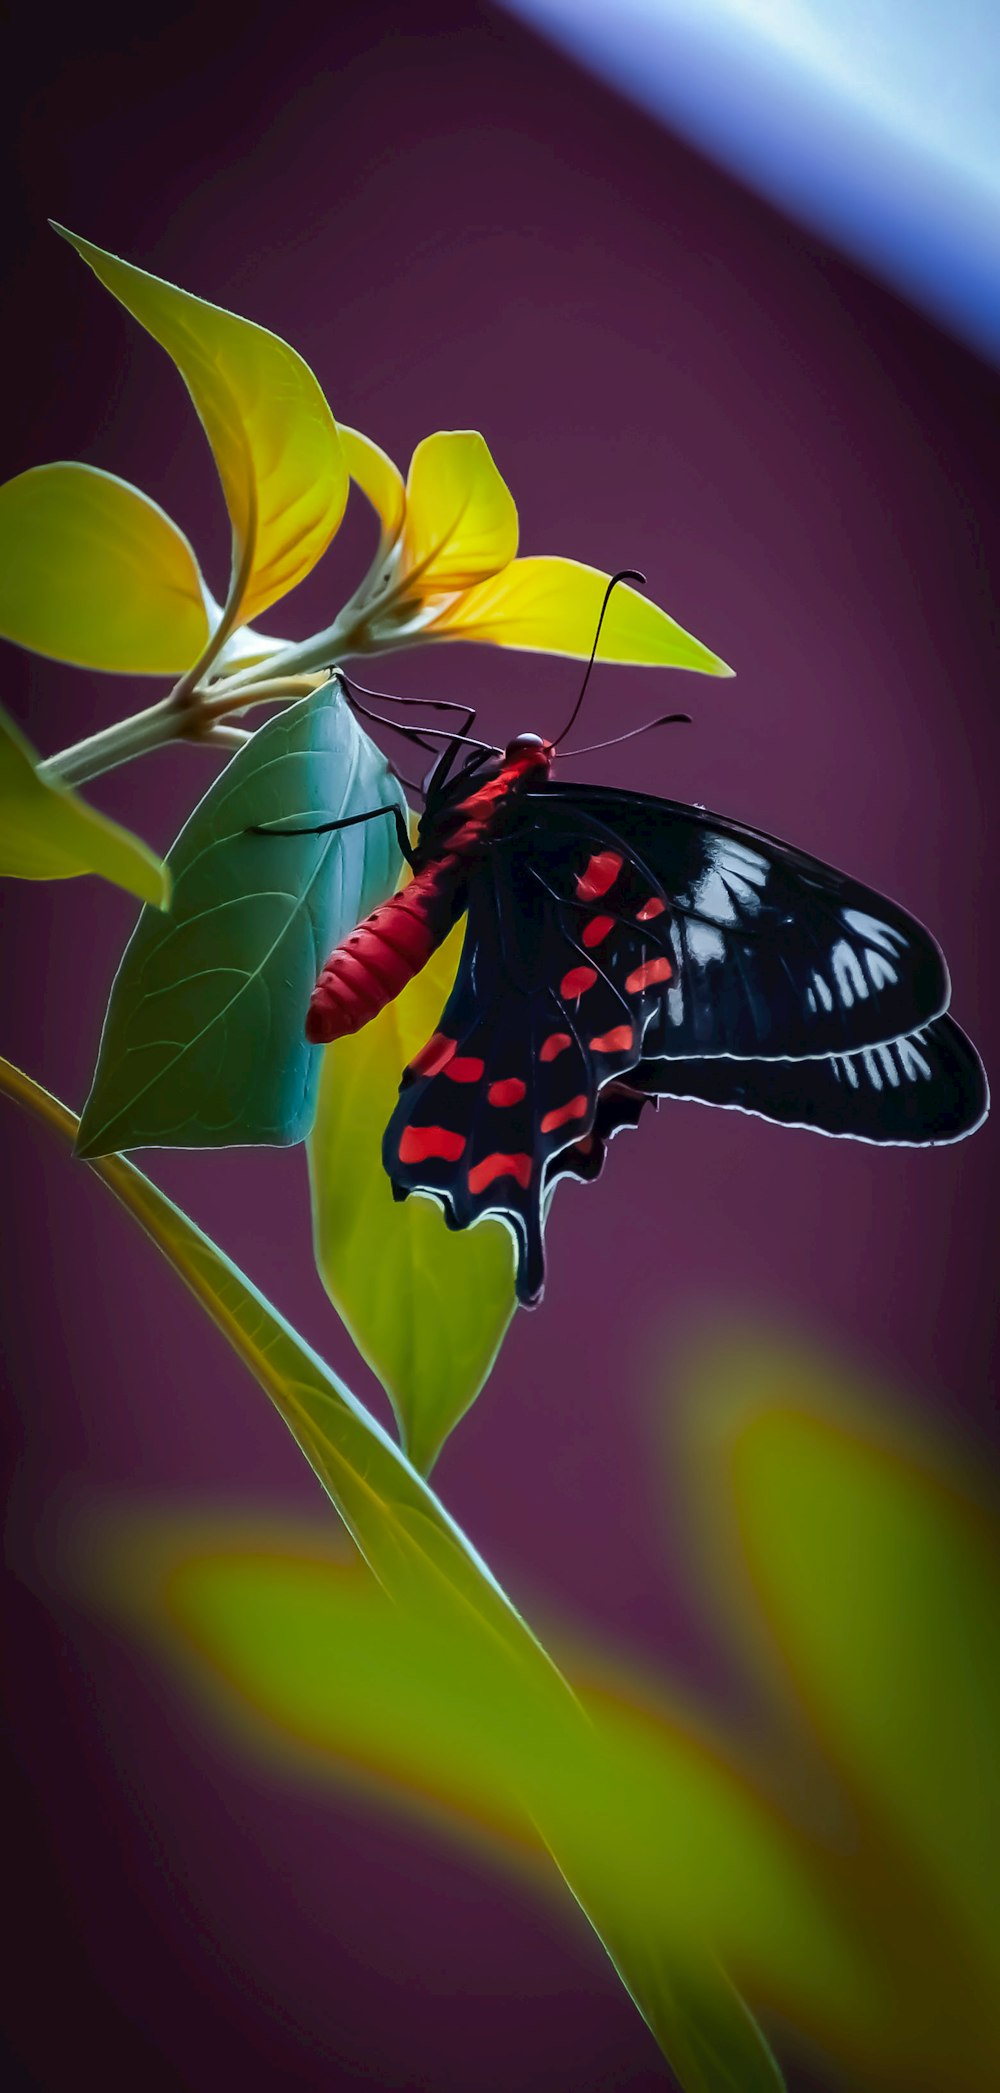 farfalla nera, bianca e rossa appollaiata su fiore giallo